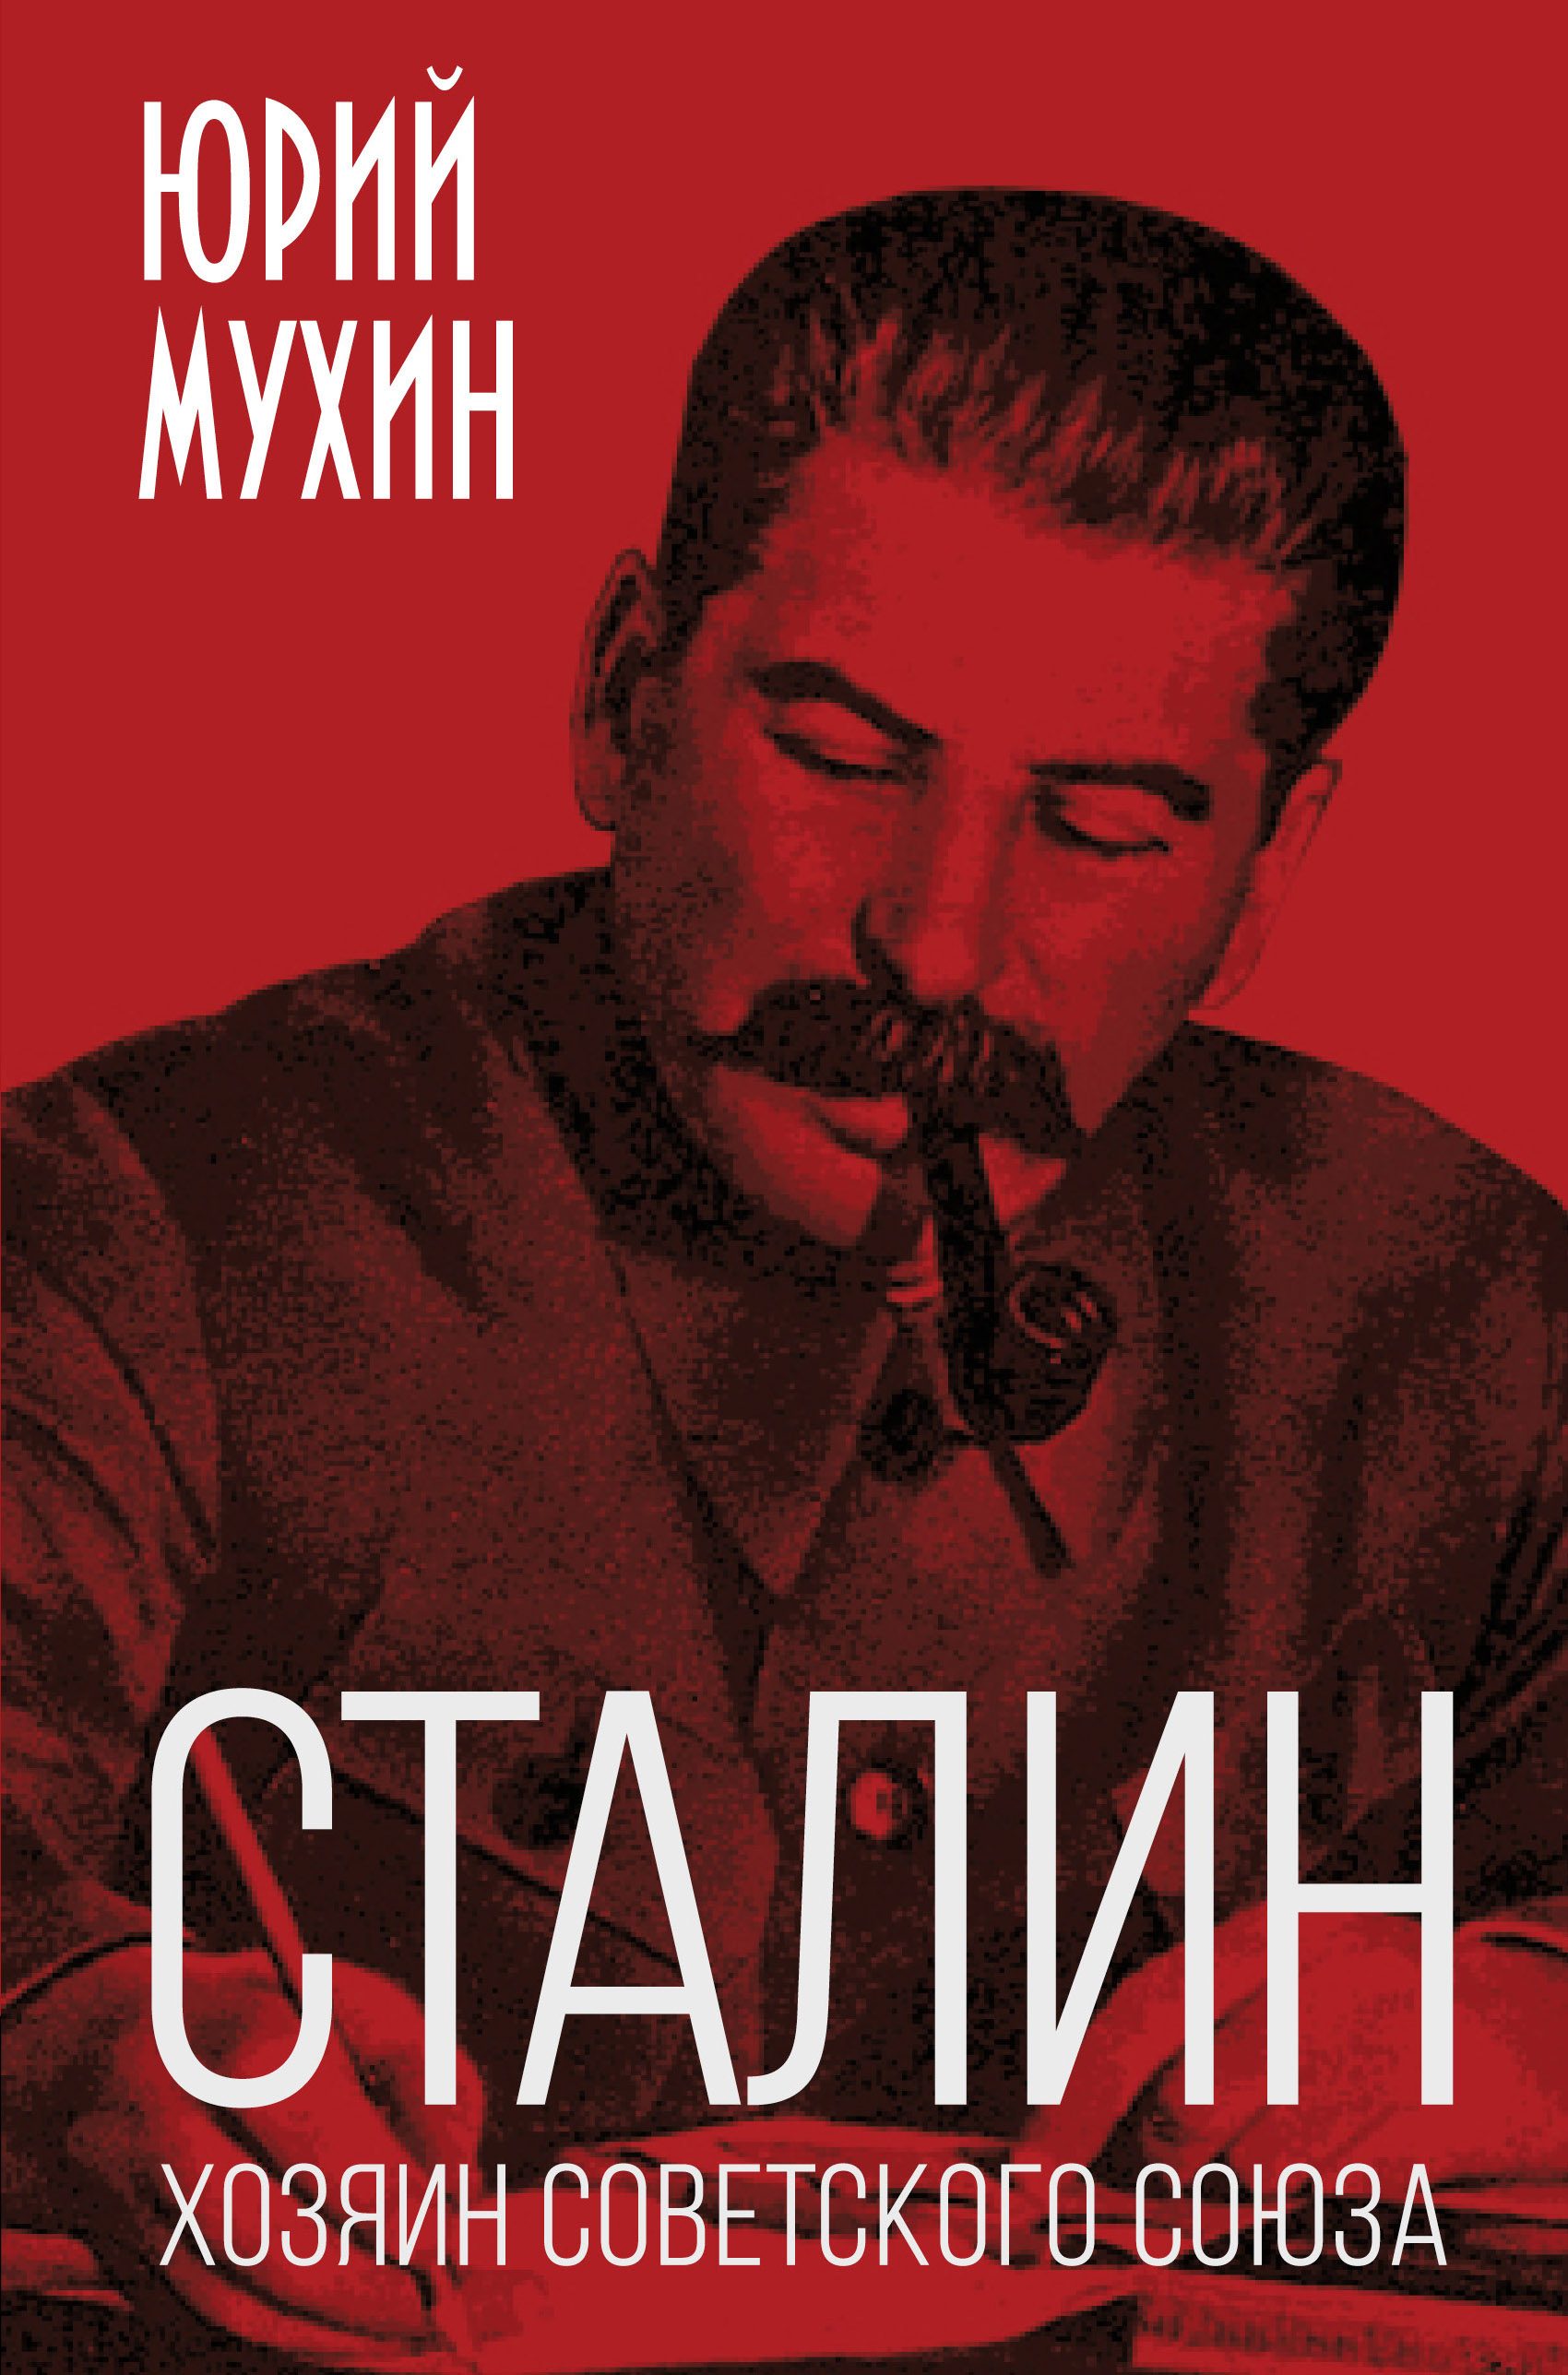 Книга Сталин – хозяин Советского Союза из серии , созданная Юрий Мухин, может относится к жанру Документальная литература, Публицистика: прочее. Стоимость электронной книги Сталин – хозяин Советского Союза с идентификатором 40275199 составляет 490.00 руб.